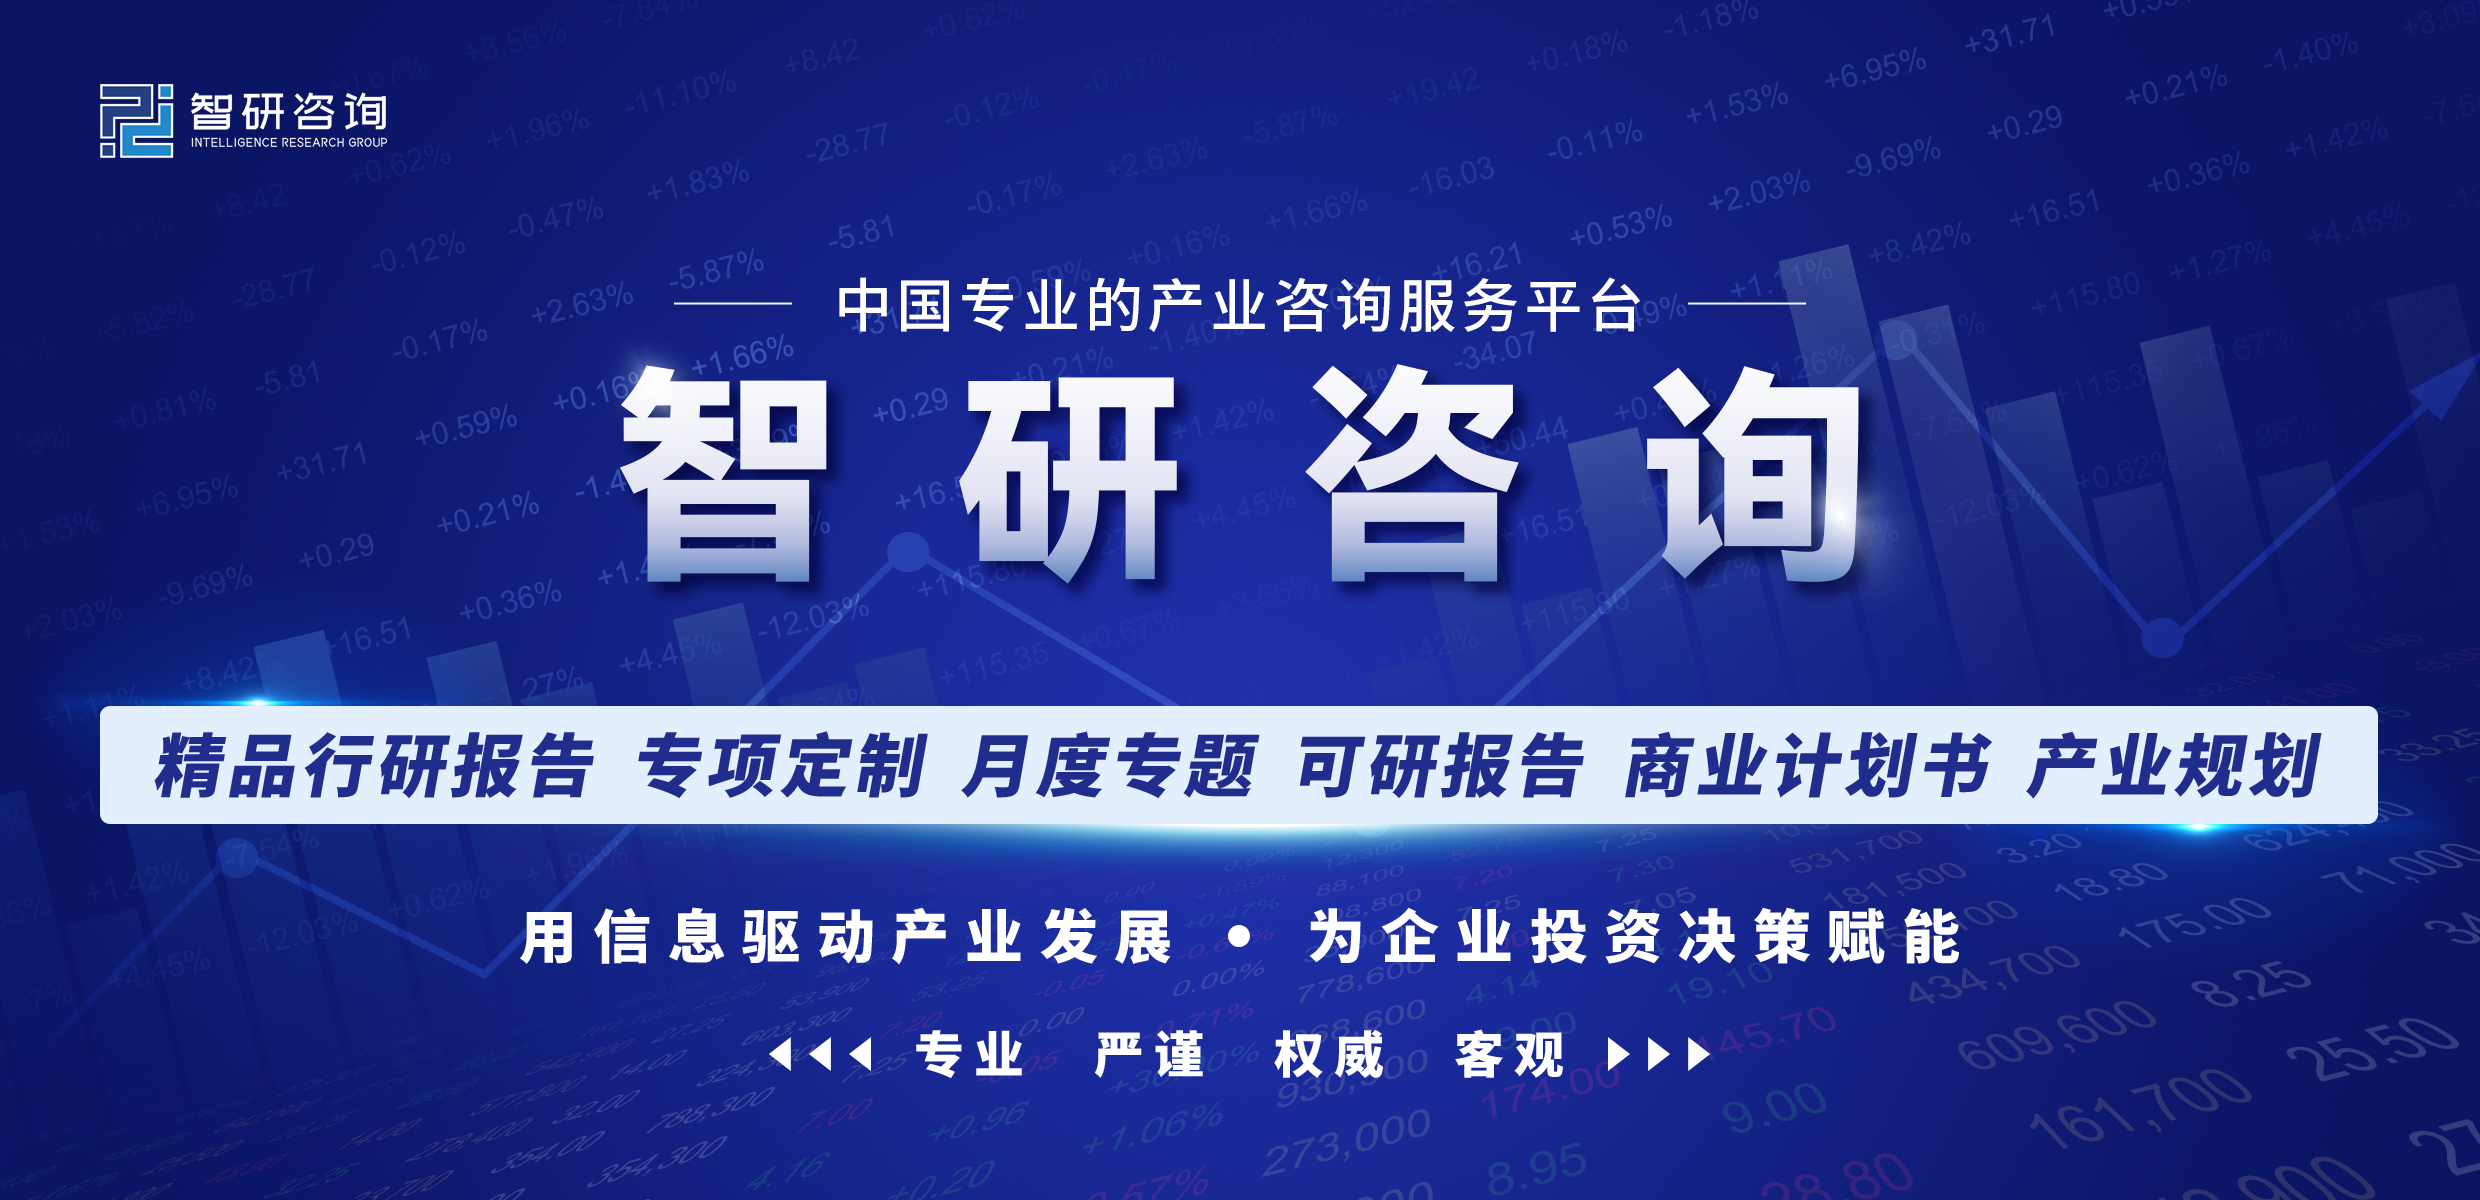 收藏！一文看懂<a href='https://www.zhouxiaohui.cn/kuajing/
' target='_blank'>跨境电商</a>物流行业市场现状及未来发展趋势预测-第1张图片-周小辉博客